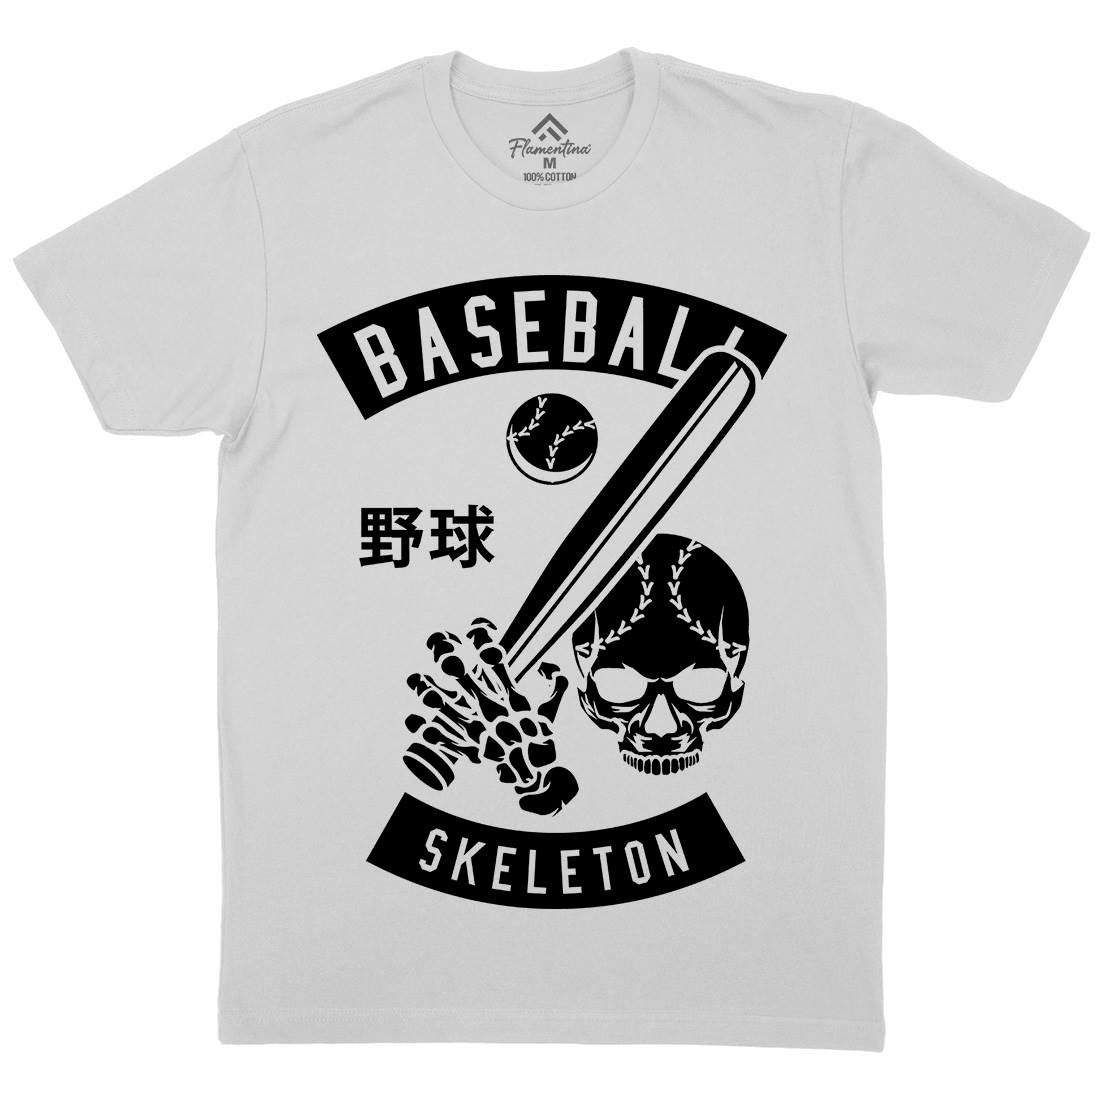 Baseball Skeleton Mens Crew Neck T-Shirt Sport B489